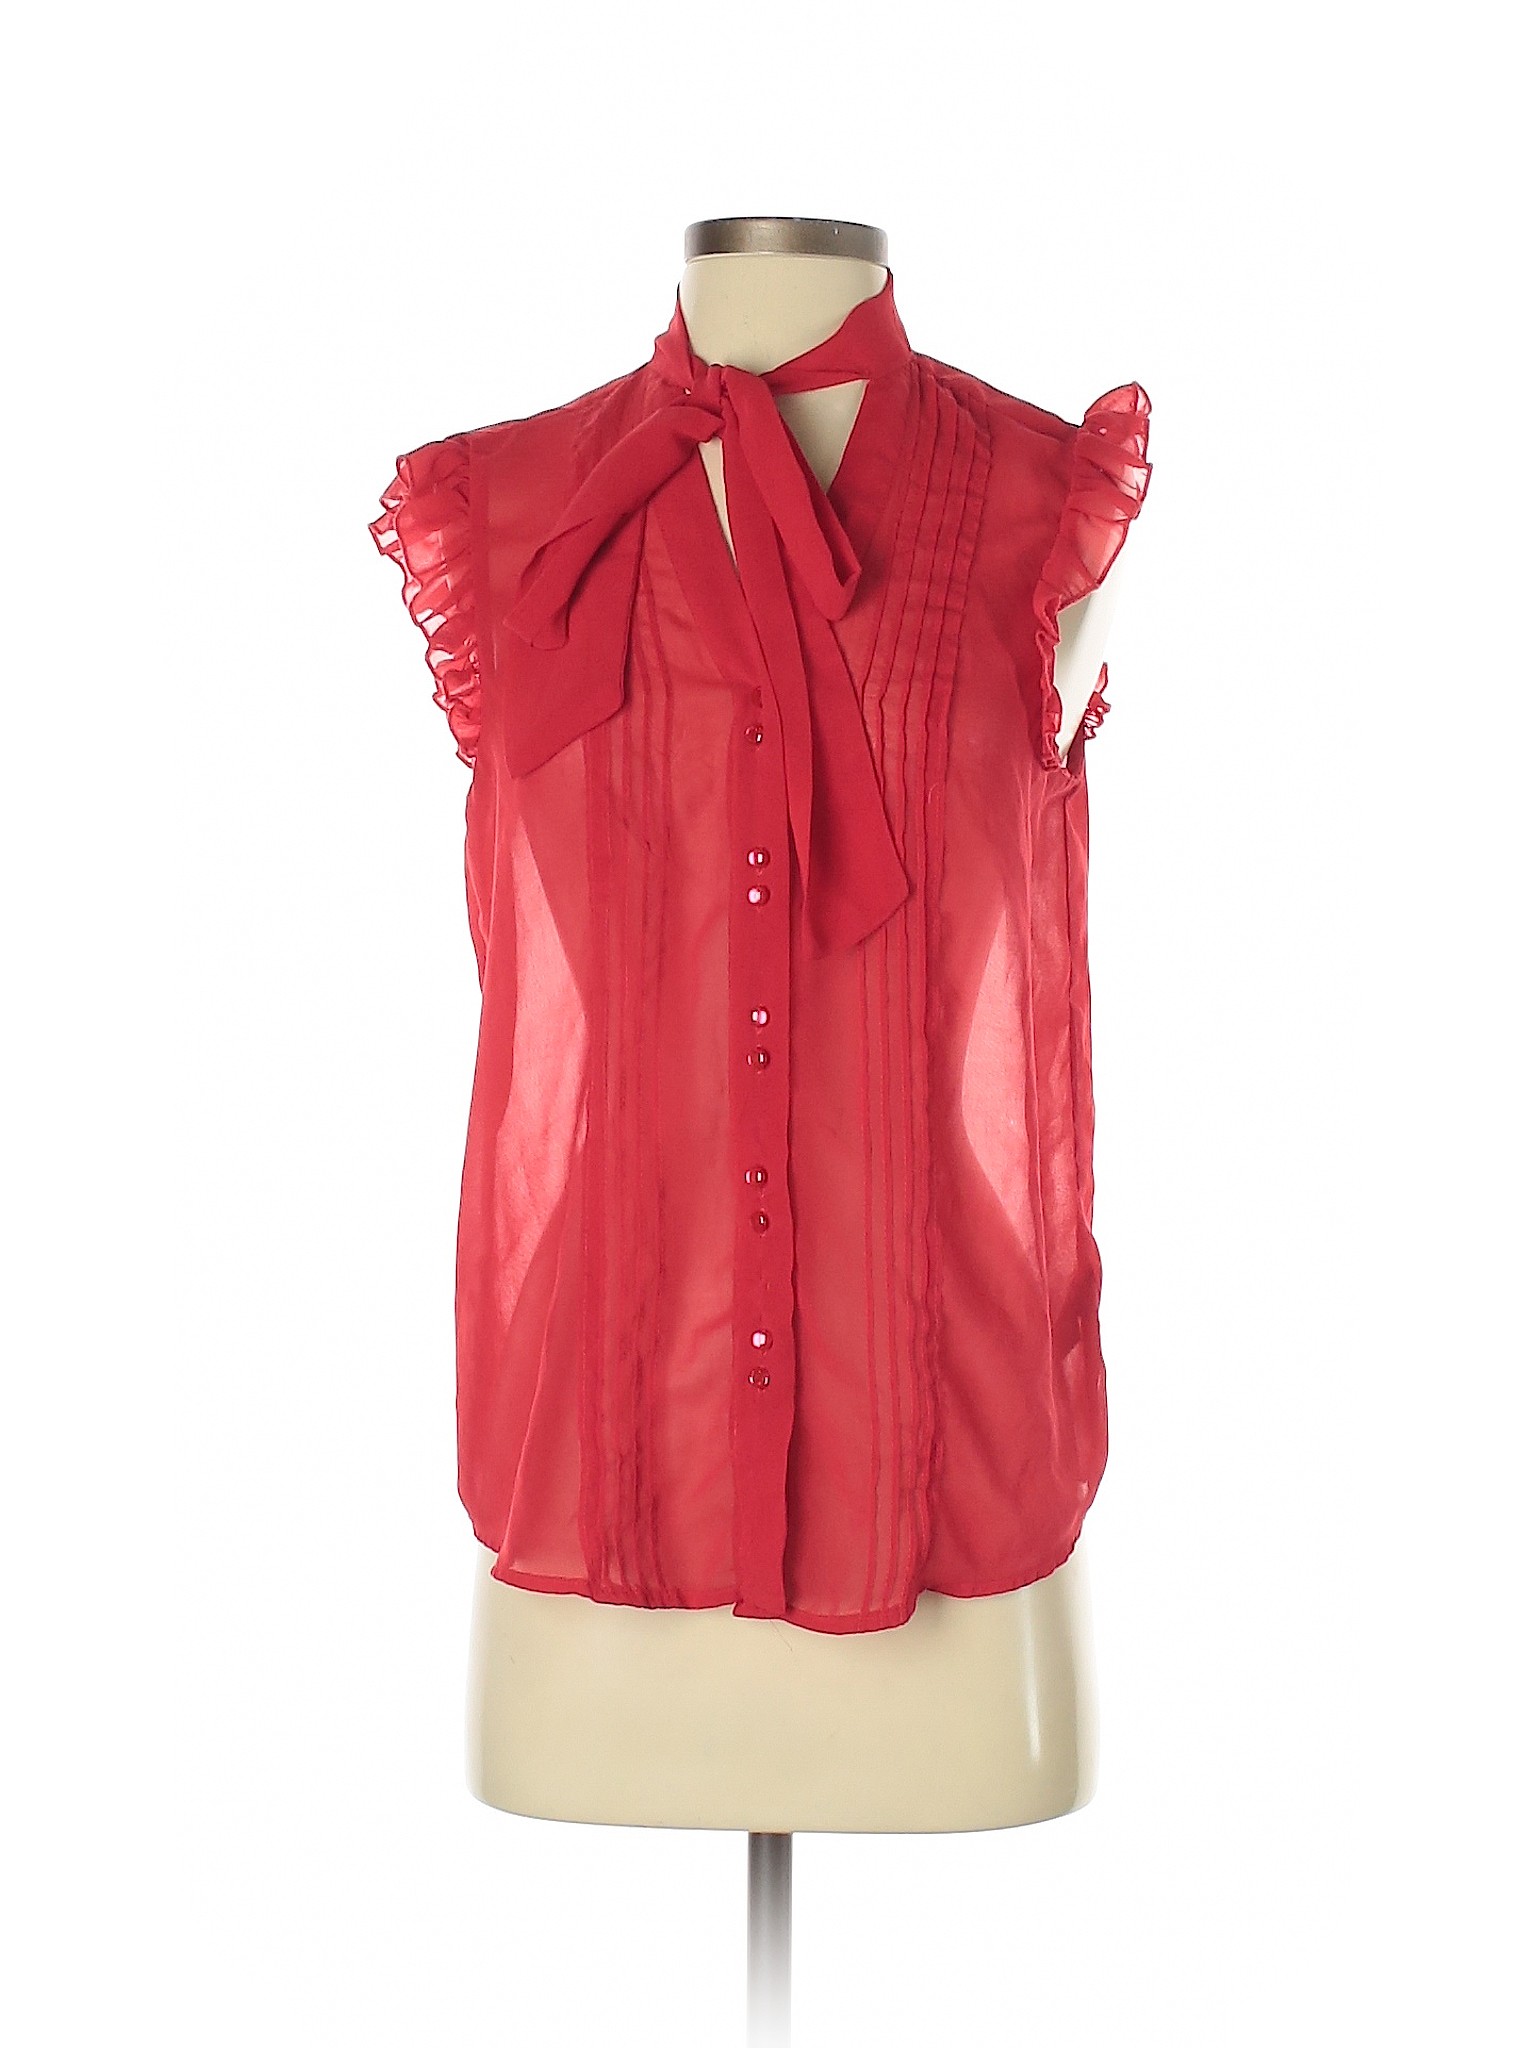 Forever 21 Women Red Sleeveless Blouse S | eBay